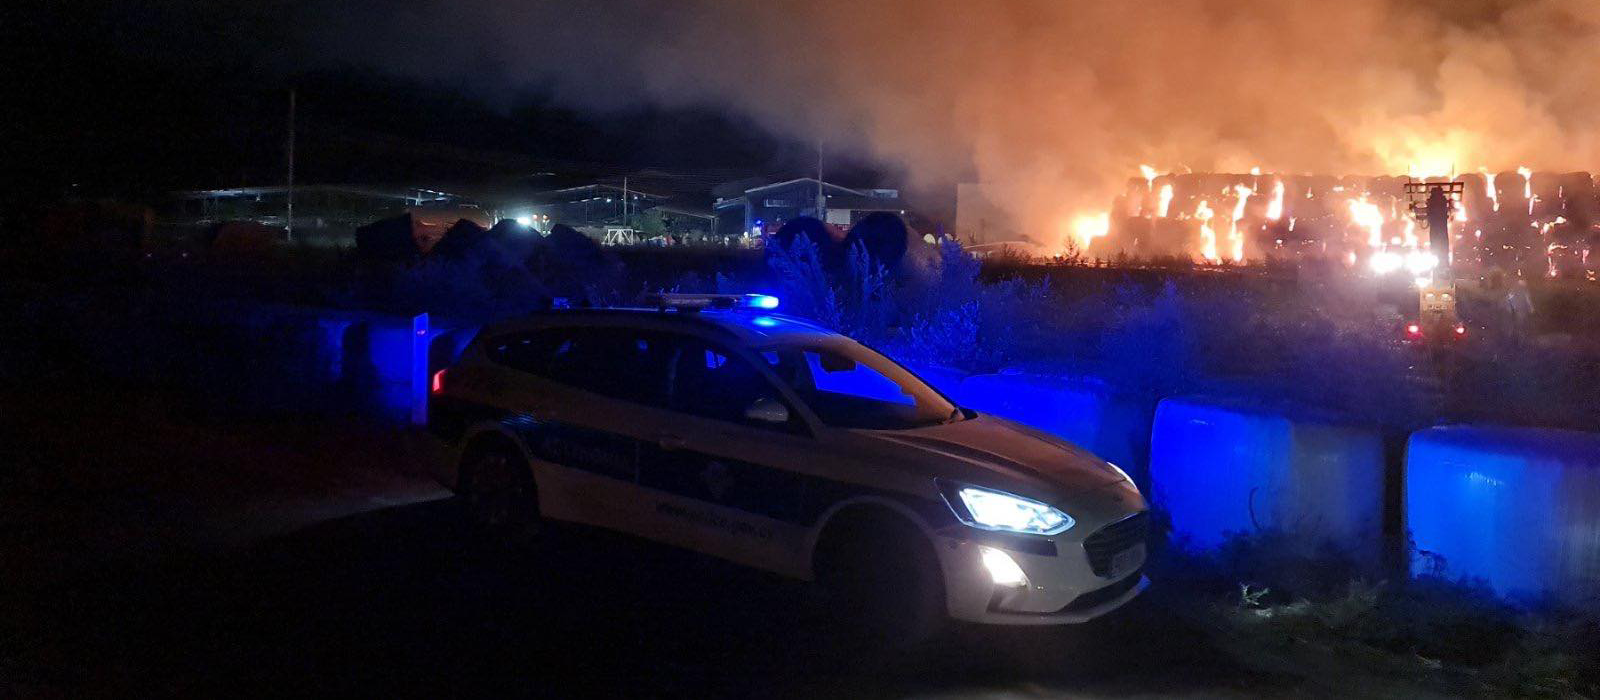 Πυρκαγιά στην επ. Λευκωσίας - ΦΩΤΟΓΡΑΦΙΕΣ από τη φάρμα- Στο σημείο 6 πυροσβεστικά και αστυνομικές δυνάμεις